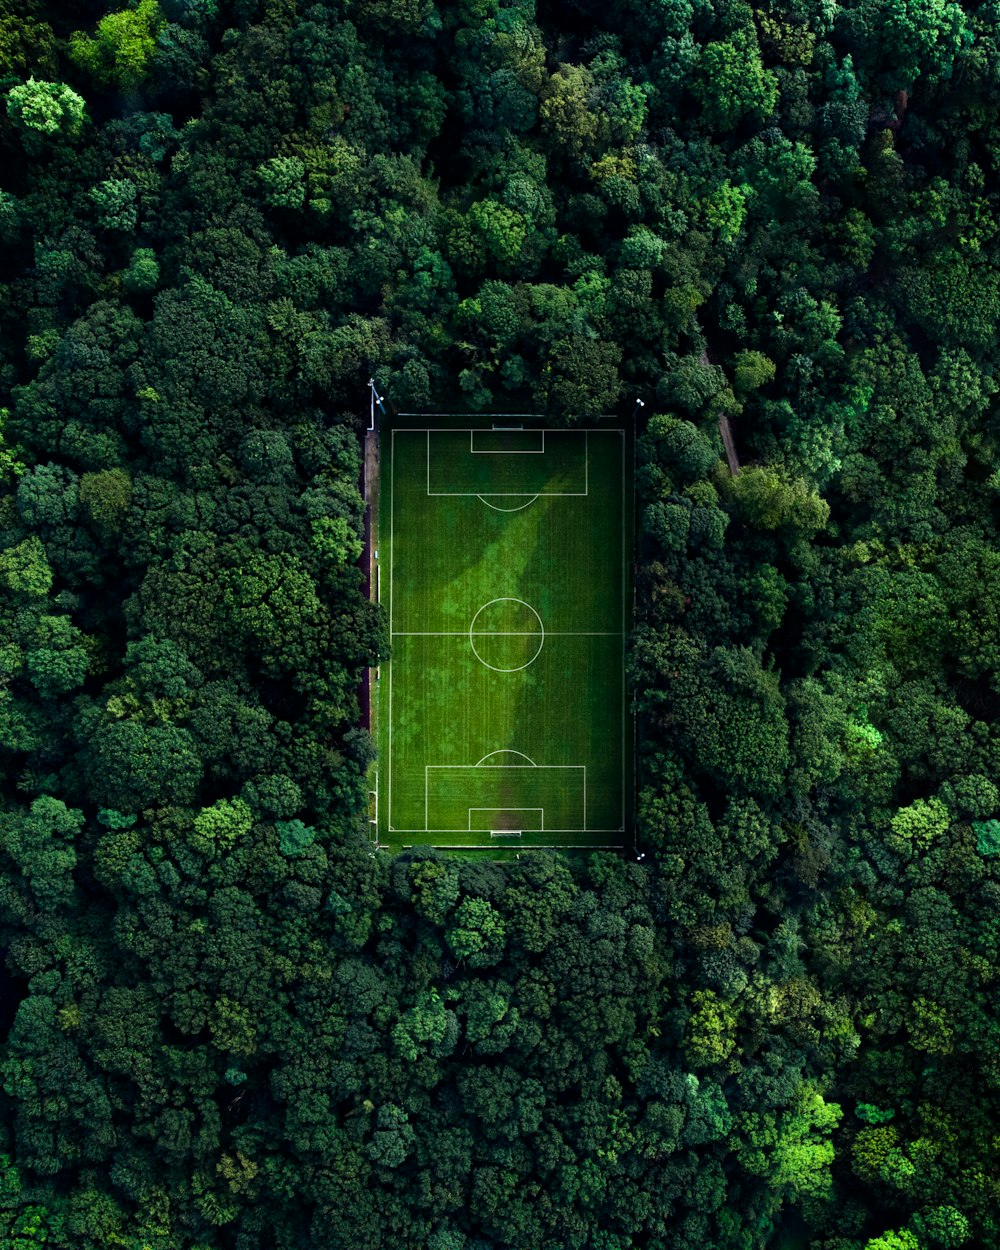 Luftaufnahme des grünen Basketballplatzes, der tagsüber von grünen Bäumen umgeben ist